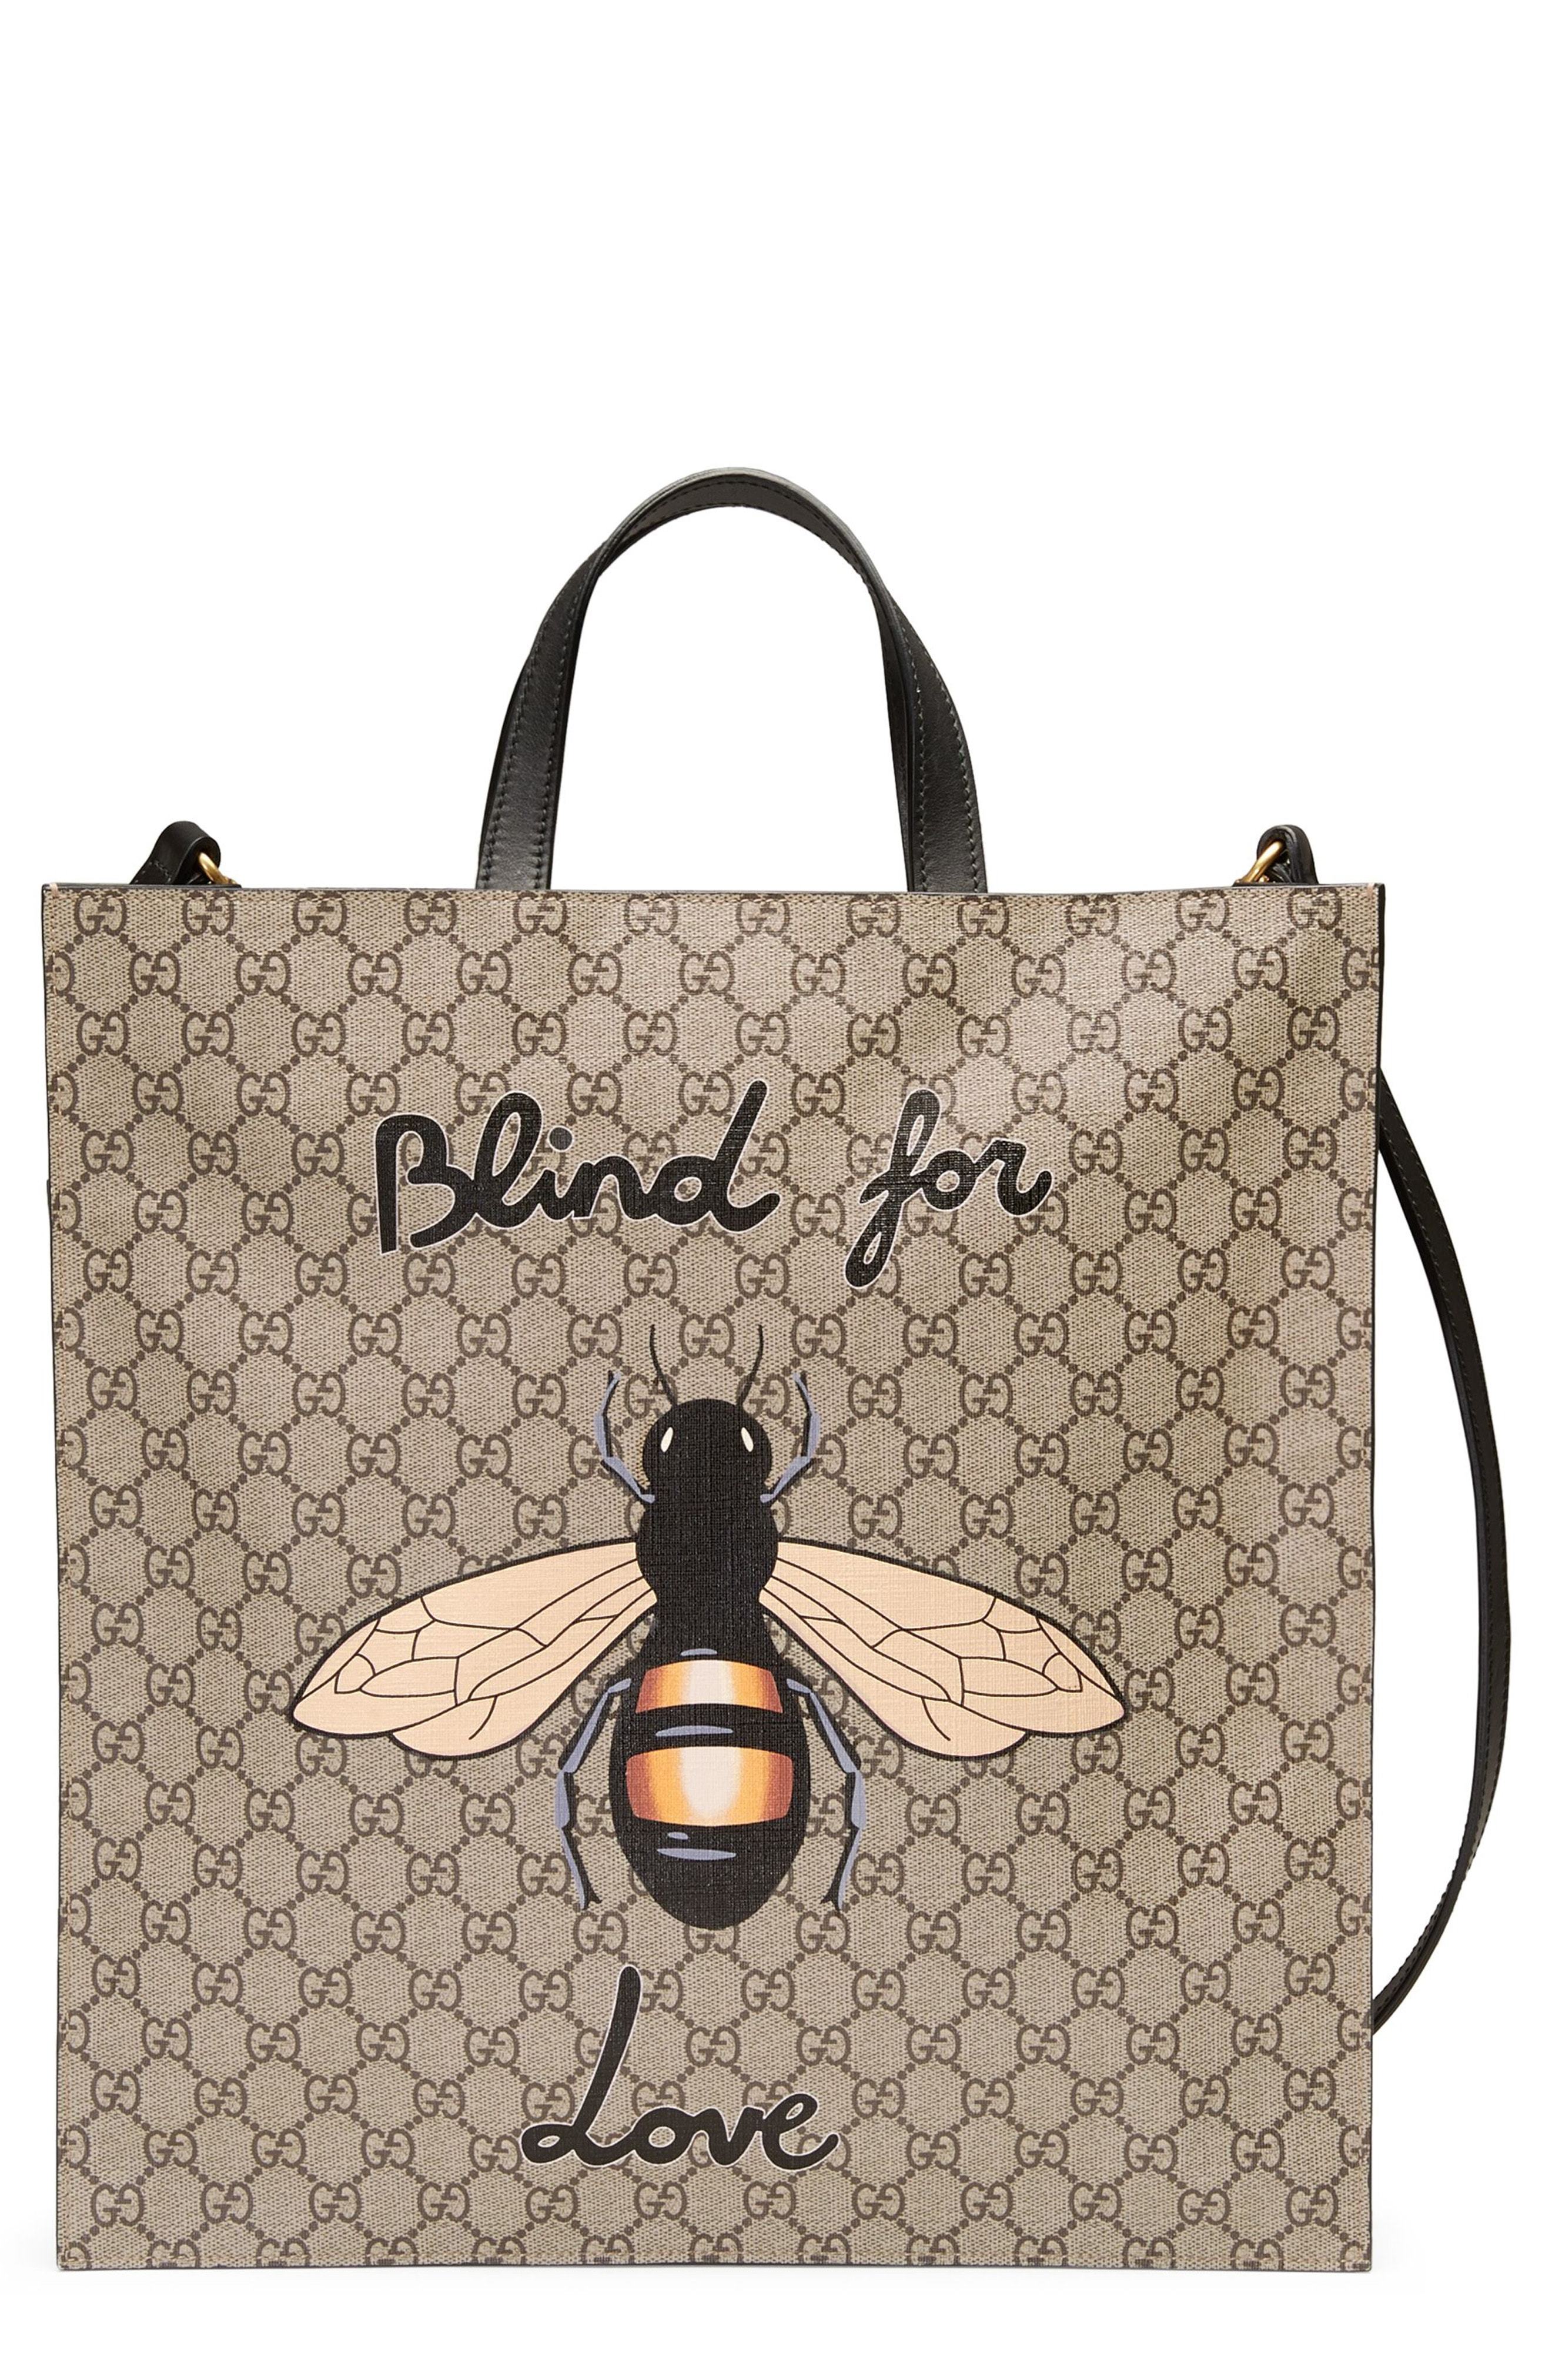 Gucci Bee Supreme Gg Tote Bag, $1,290 